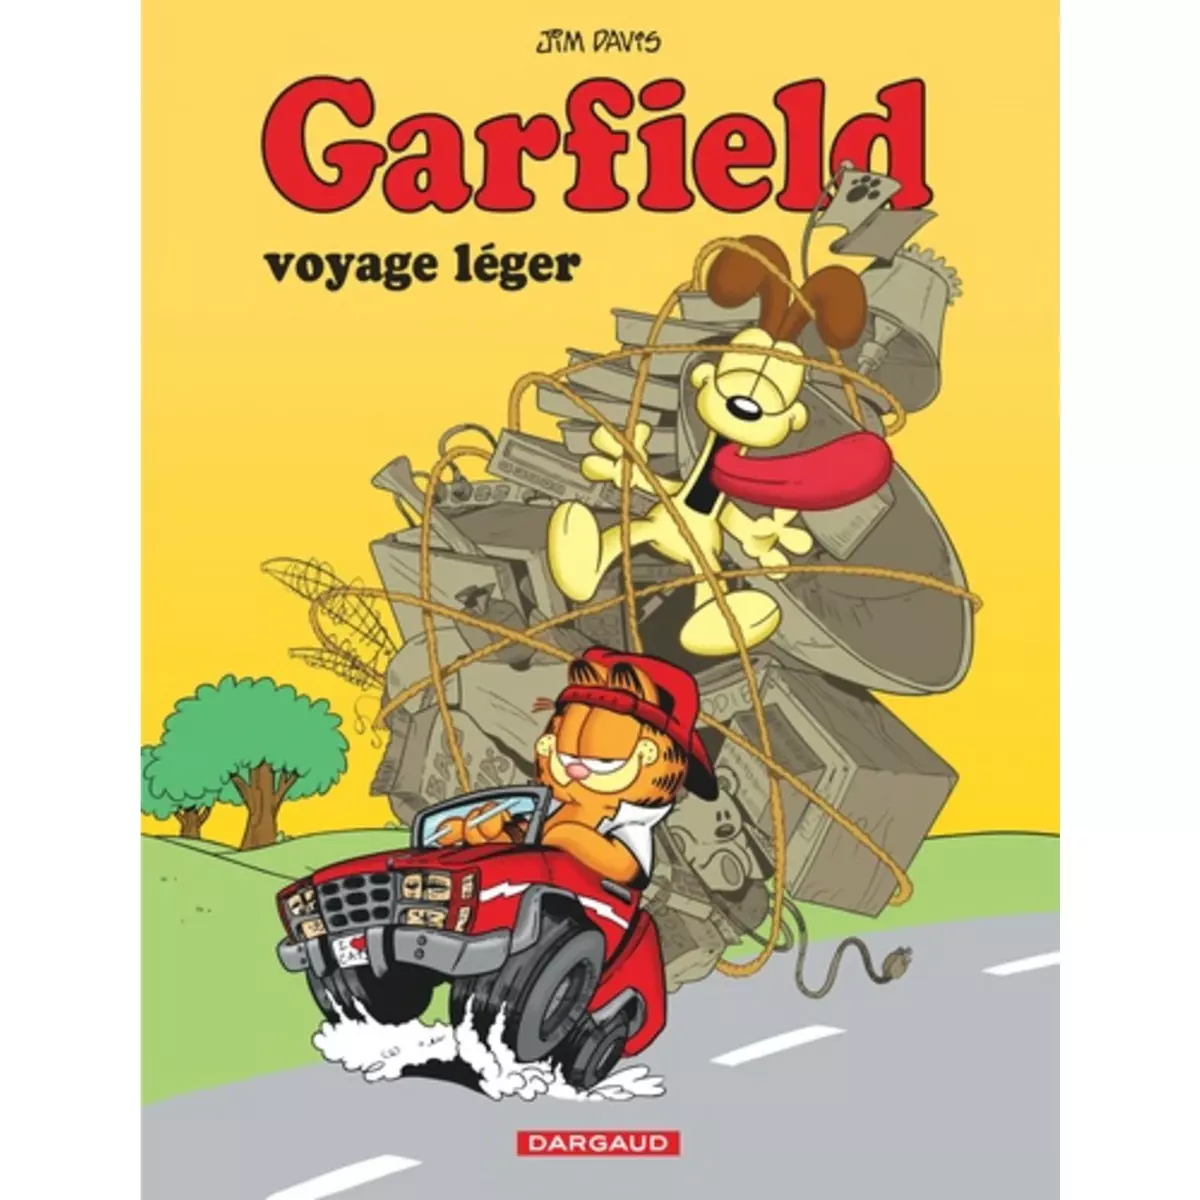  GARFIELD TOME 67 : GARFIELD VOYAGE LEGER, Davis Jim